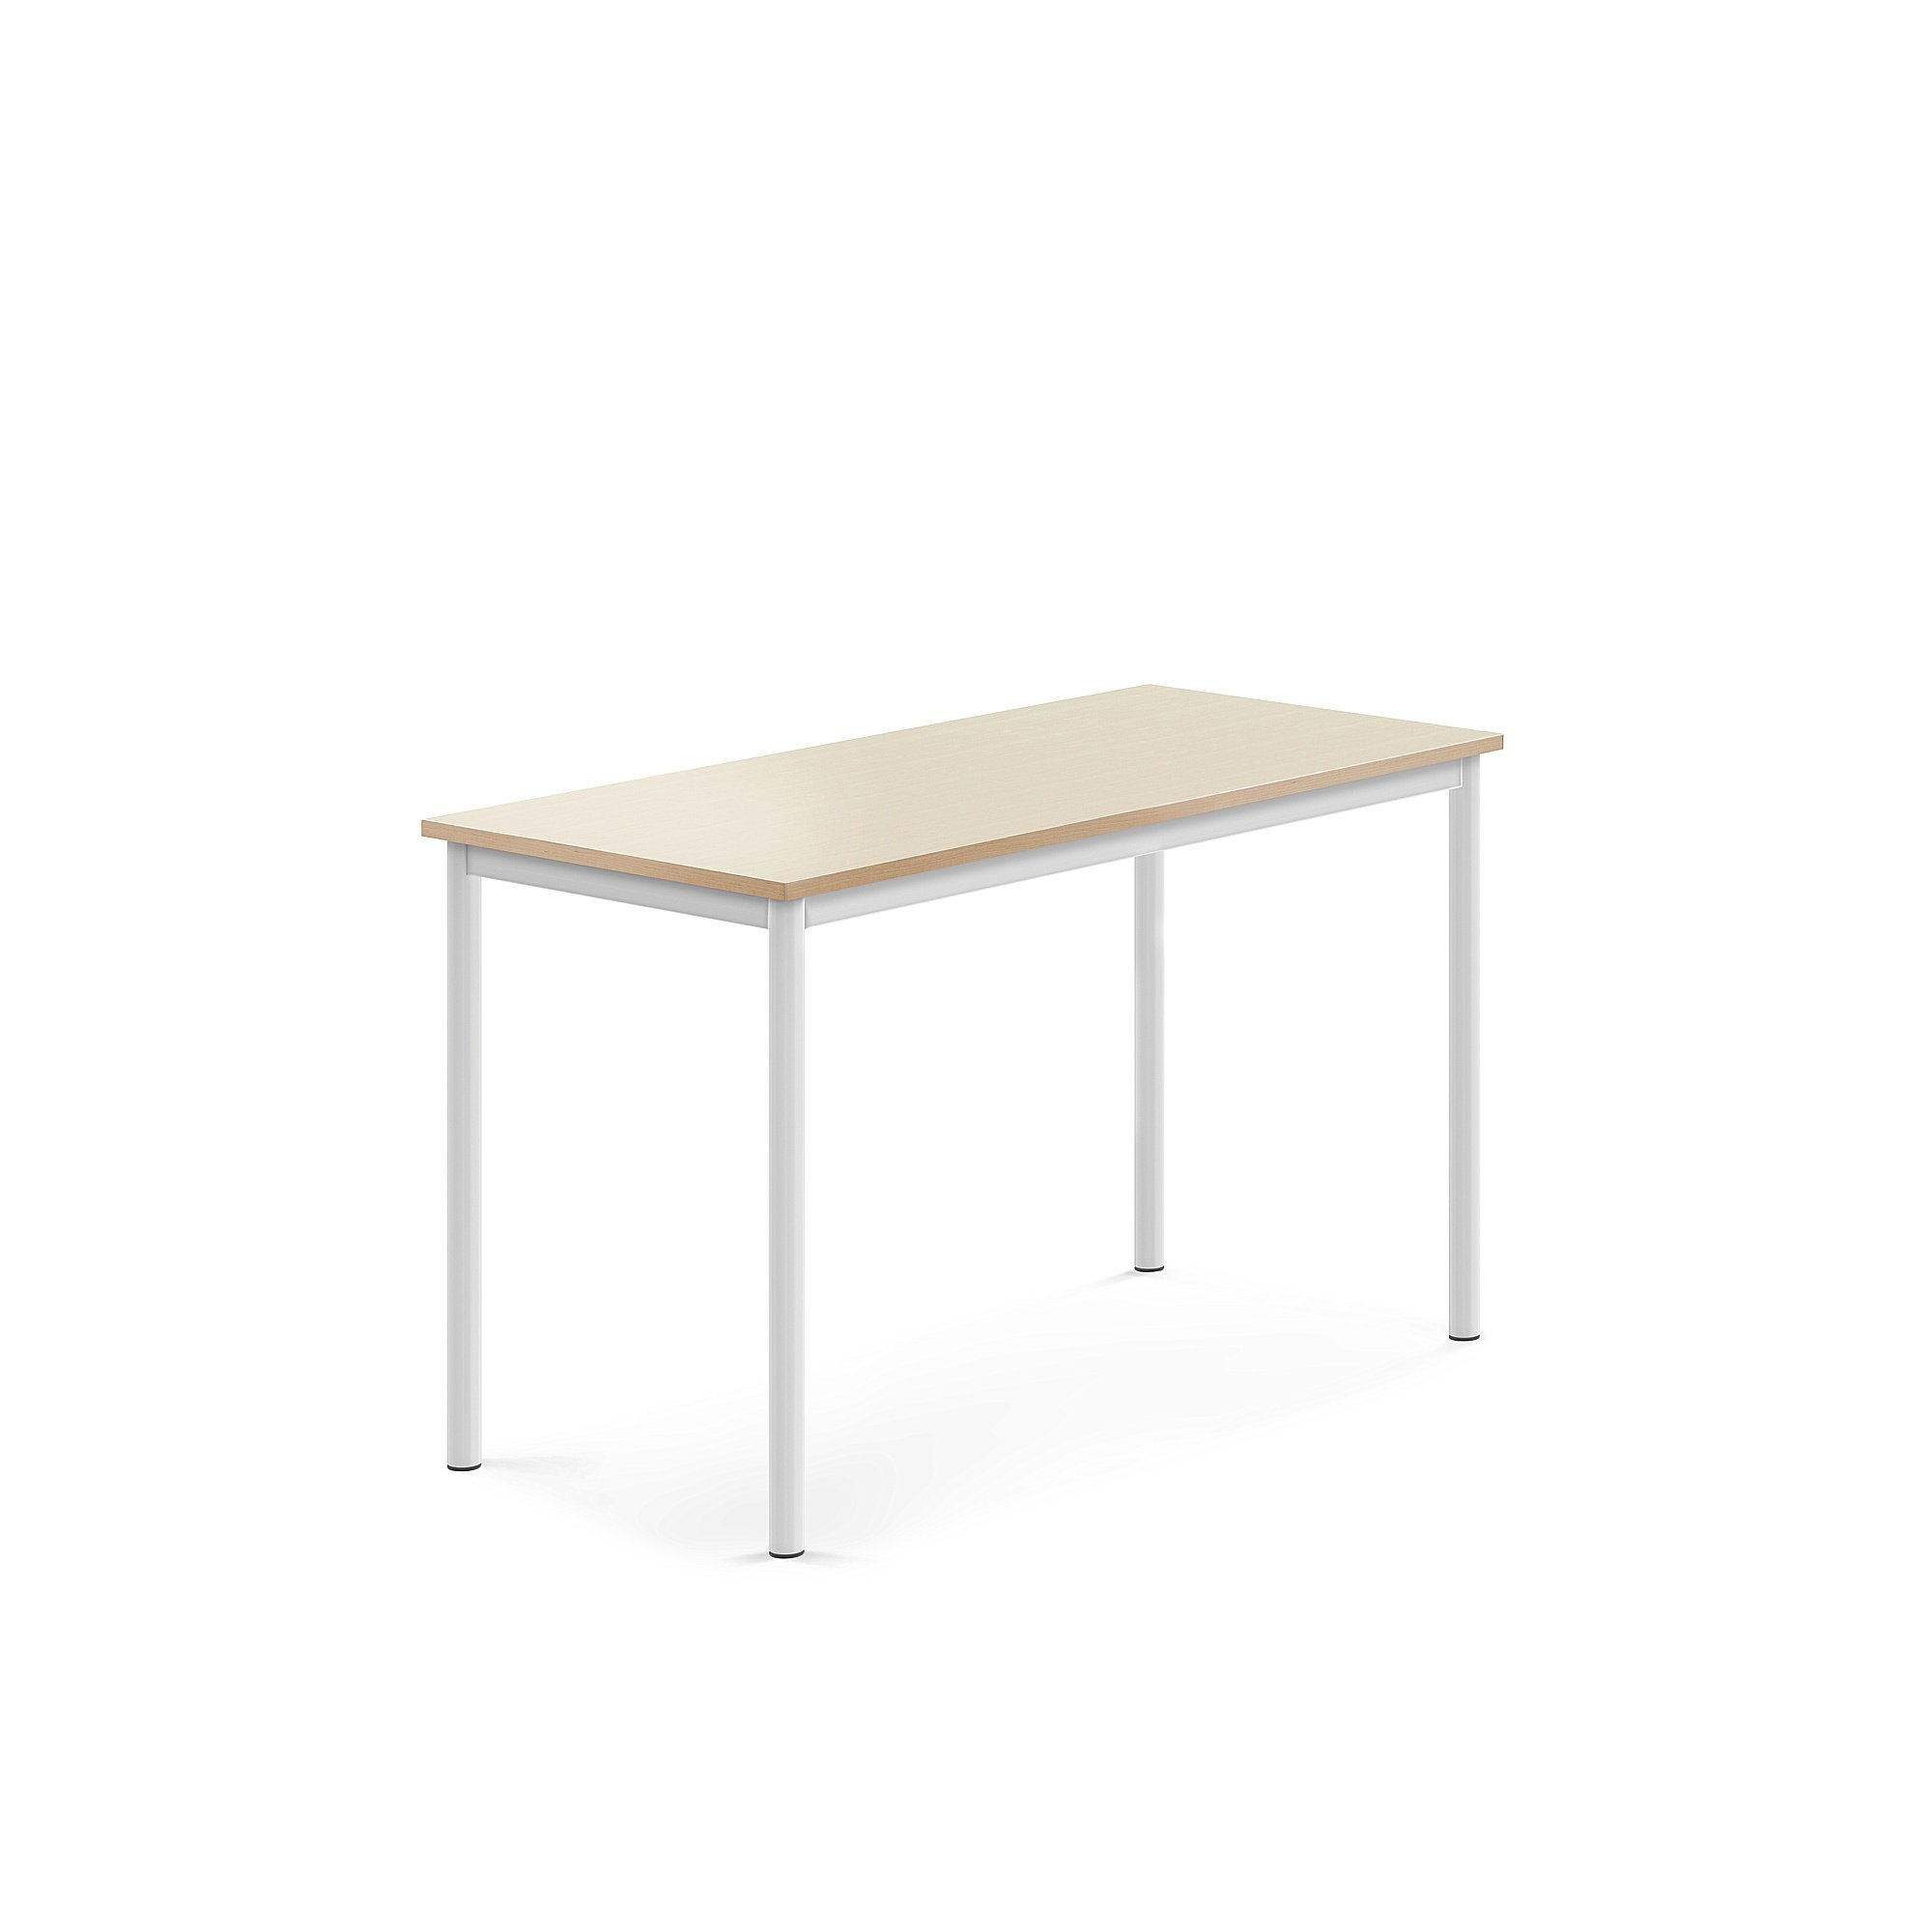 Stůl BORÅS, 1200x600x720 mm, bílé nohy, HPL deska, bříza